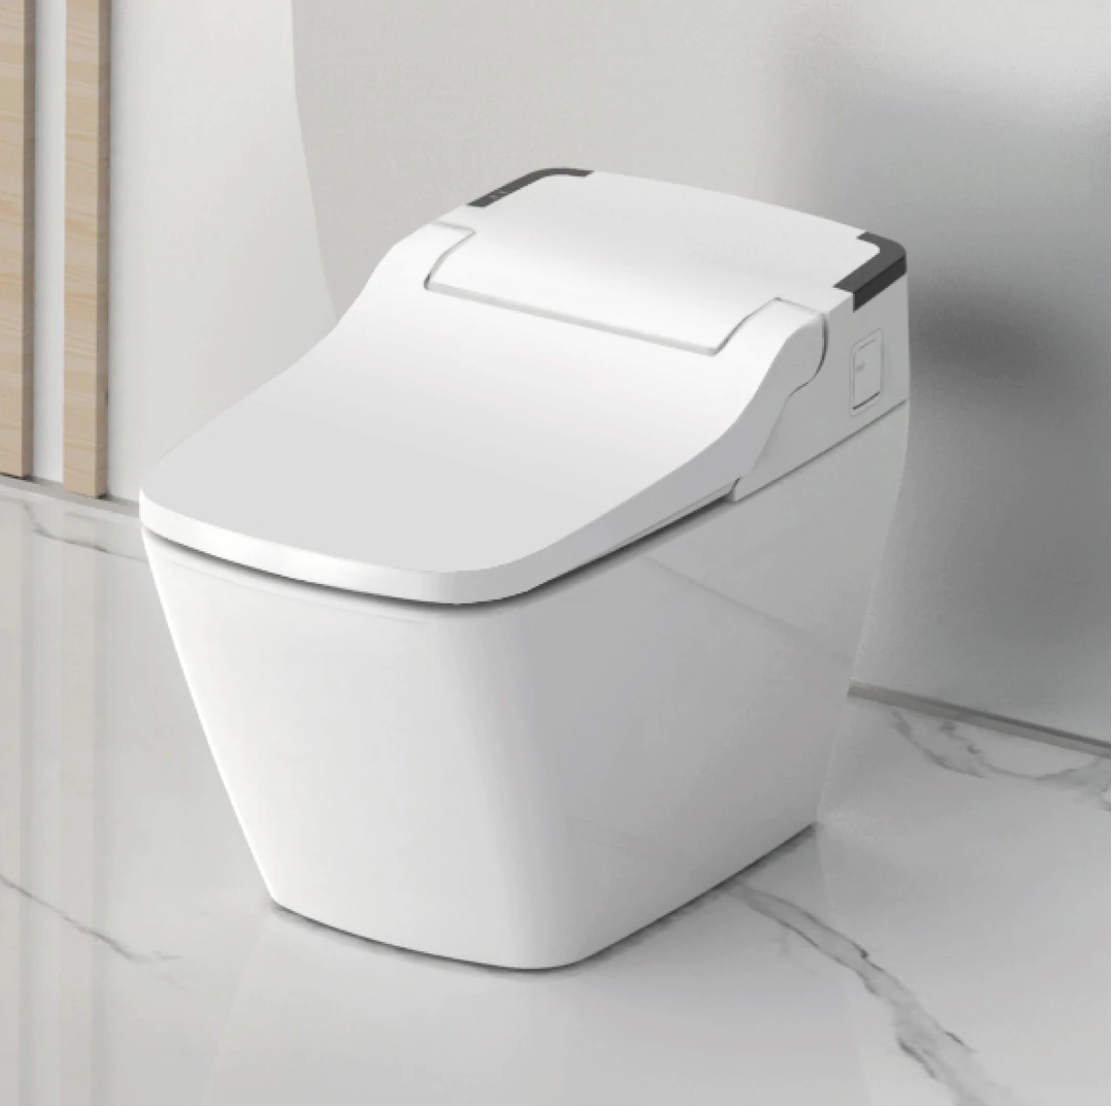 VOVO STYLEMENT TCB-090SA Integrated Smart Bidet Toilet (Auto)